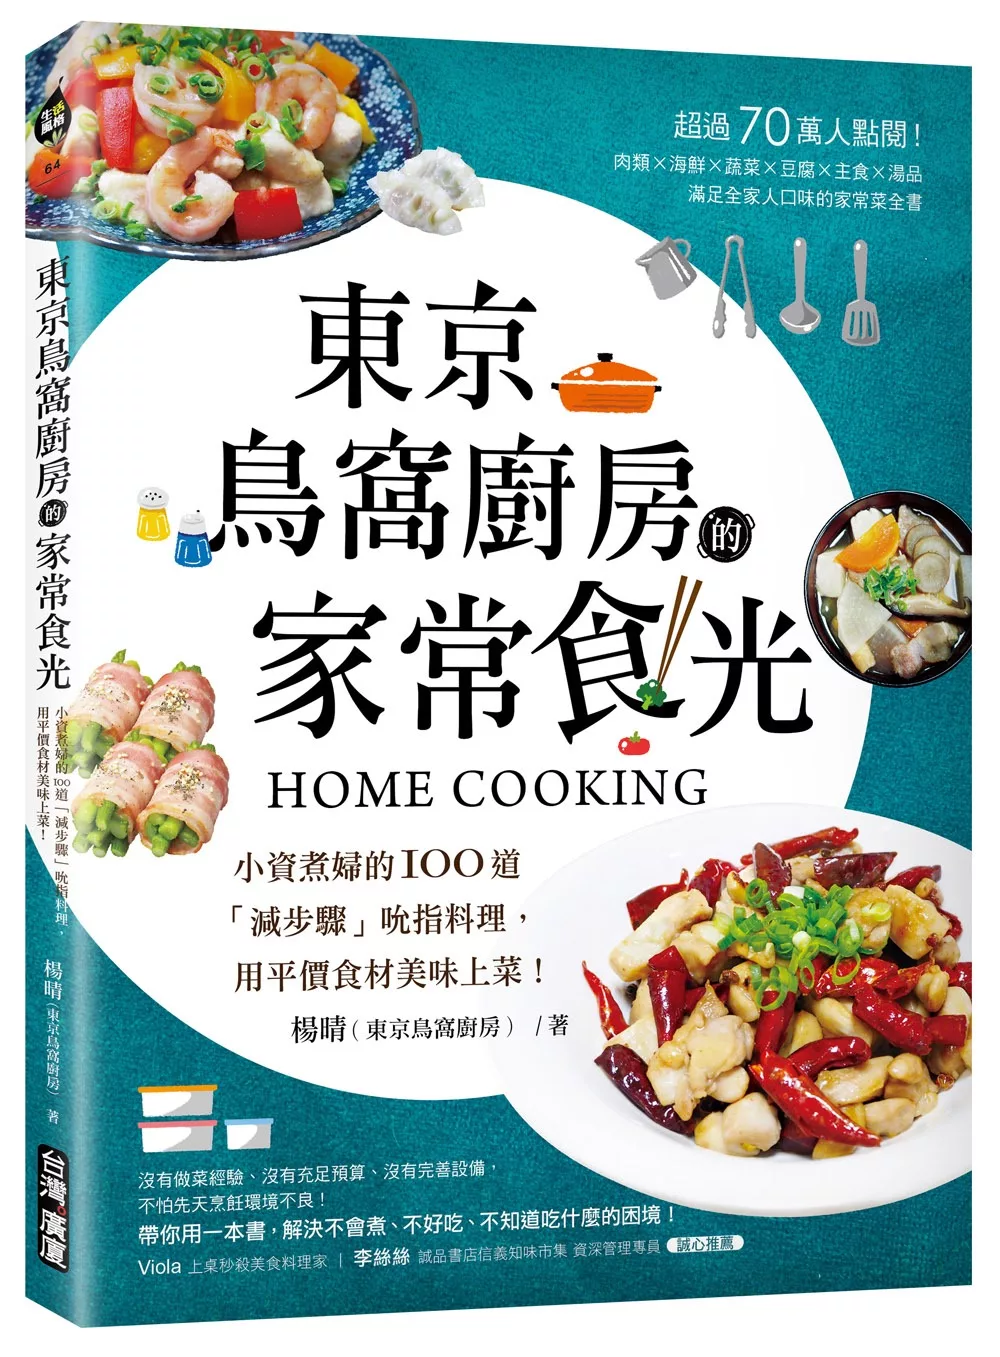 東京鳥窩廚房的家常食光：小資煮婦的100道「減步驟」吮指料理，用平價食材美味上菜！